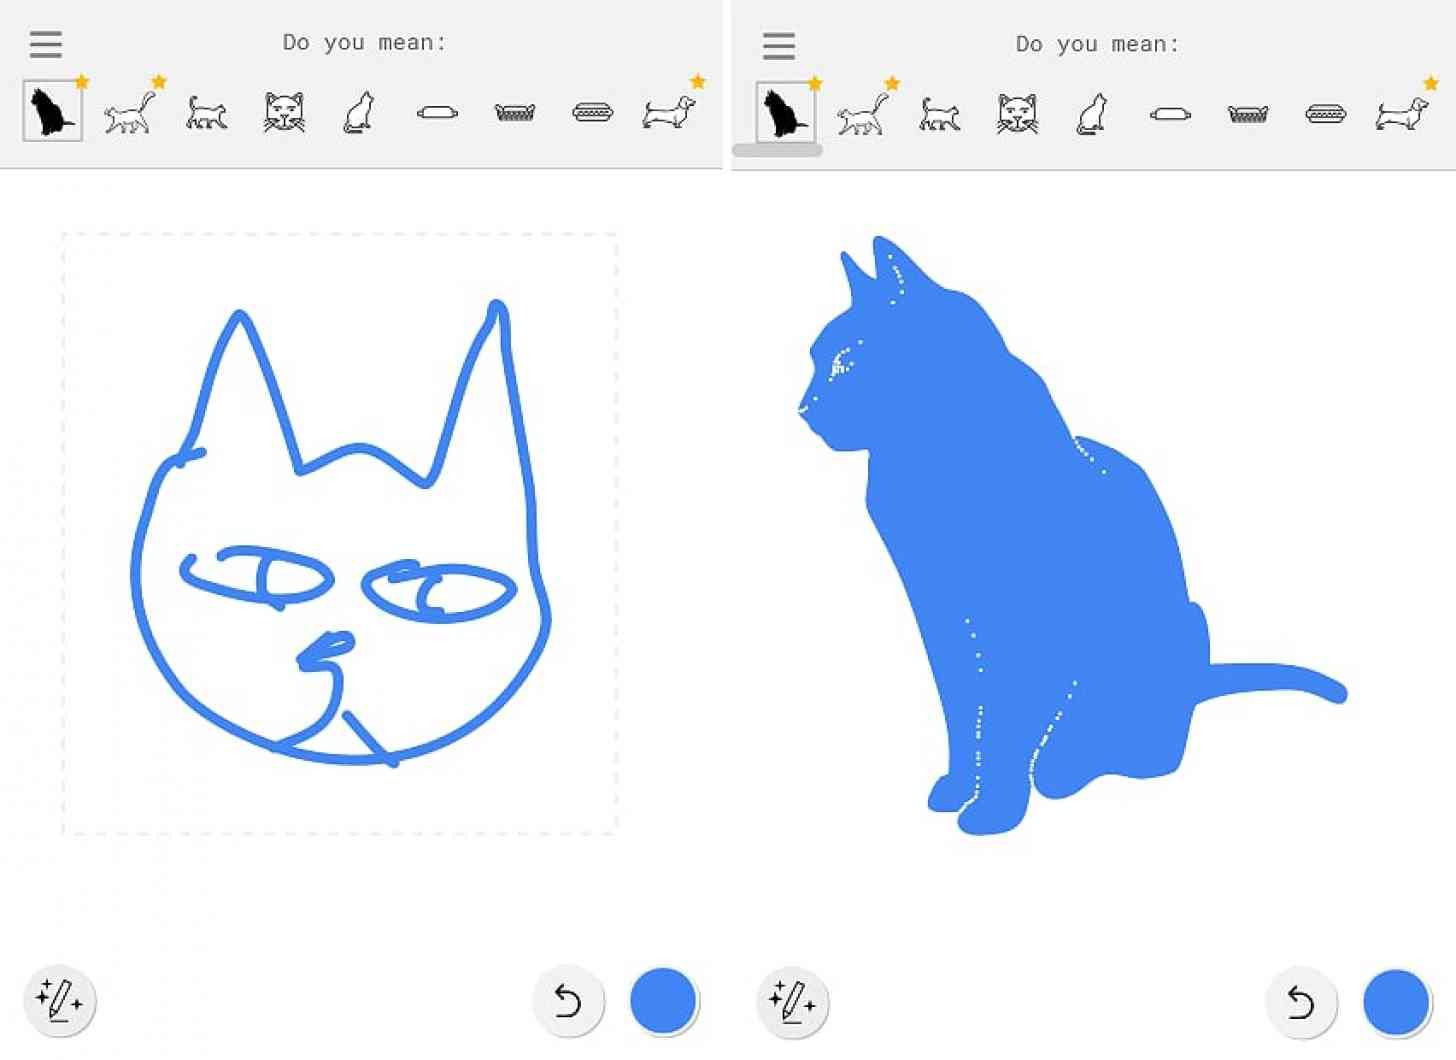 Нова програма Google перетворює ескізи у справжні малюнки. Компанія Google представила графічний редактор AutoDraw, який перемальовує начерки користувача в готові малюнки.